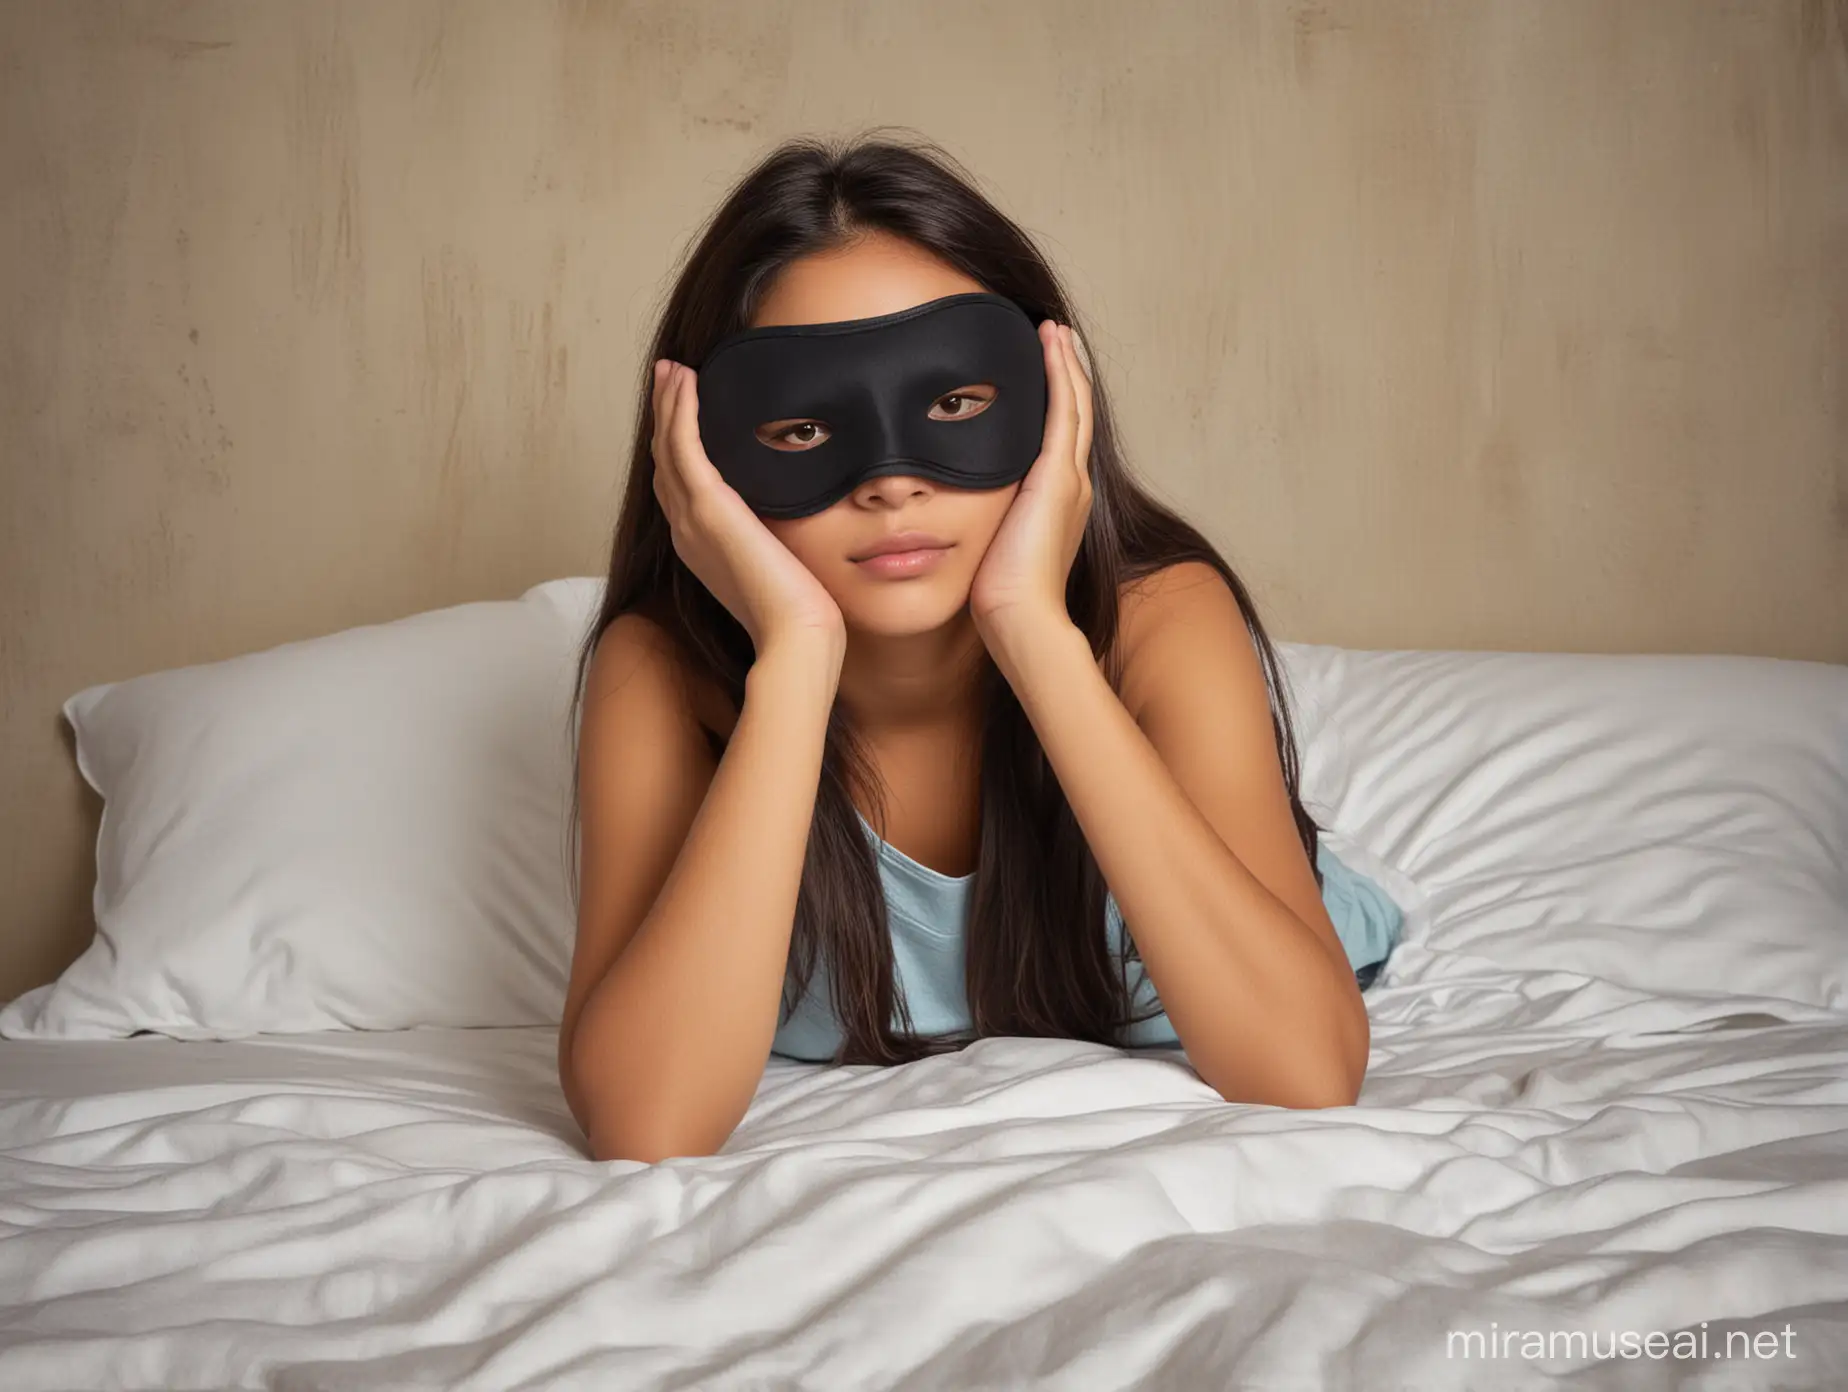 Melancholic Latina Teenager Wearing Sleep Mask